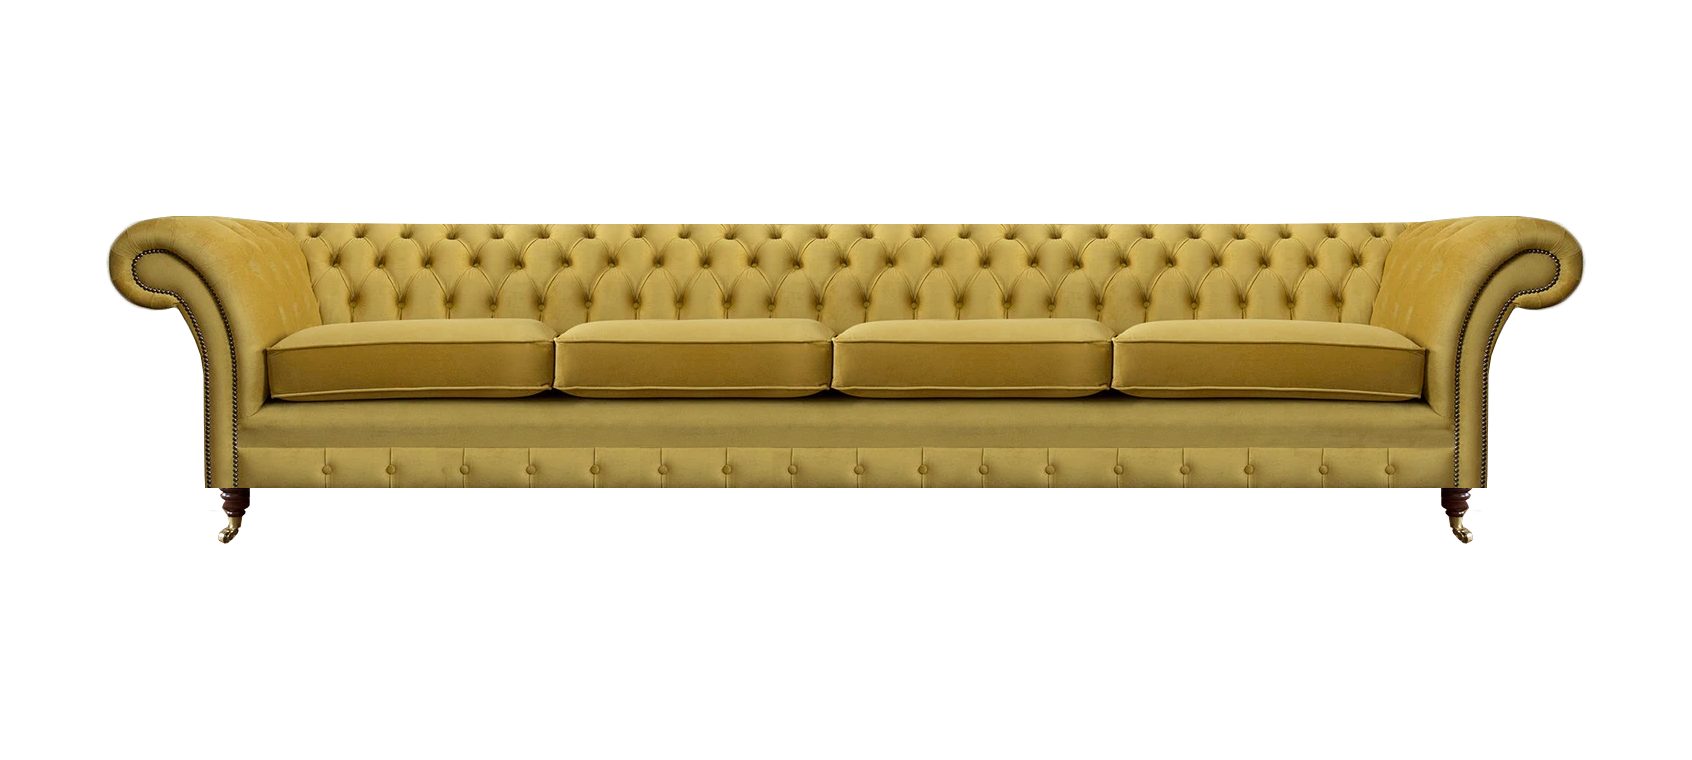 JVmoebel Chesterfield-Sofa Viersitzer Sofa Couch Gelb Möbel Wohnzimmer Polstermöbel Neu, 1 Teile, Made in Europa